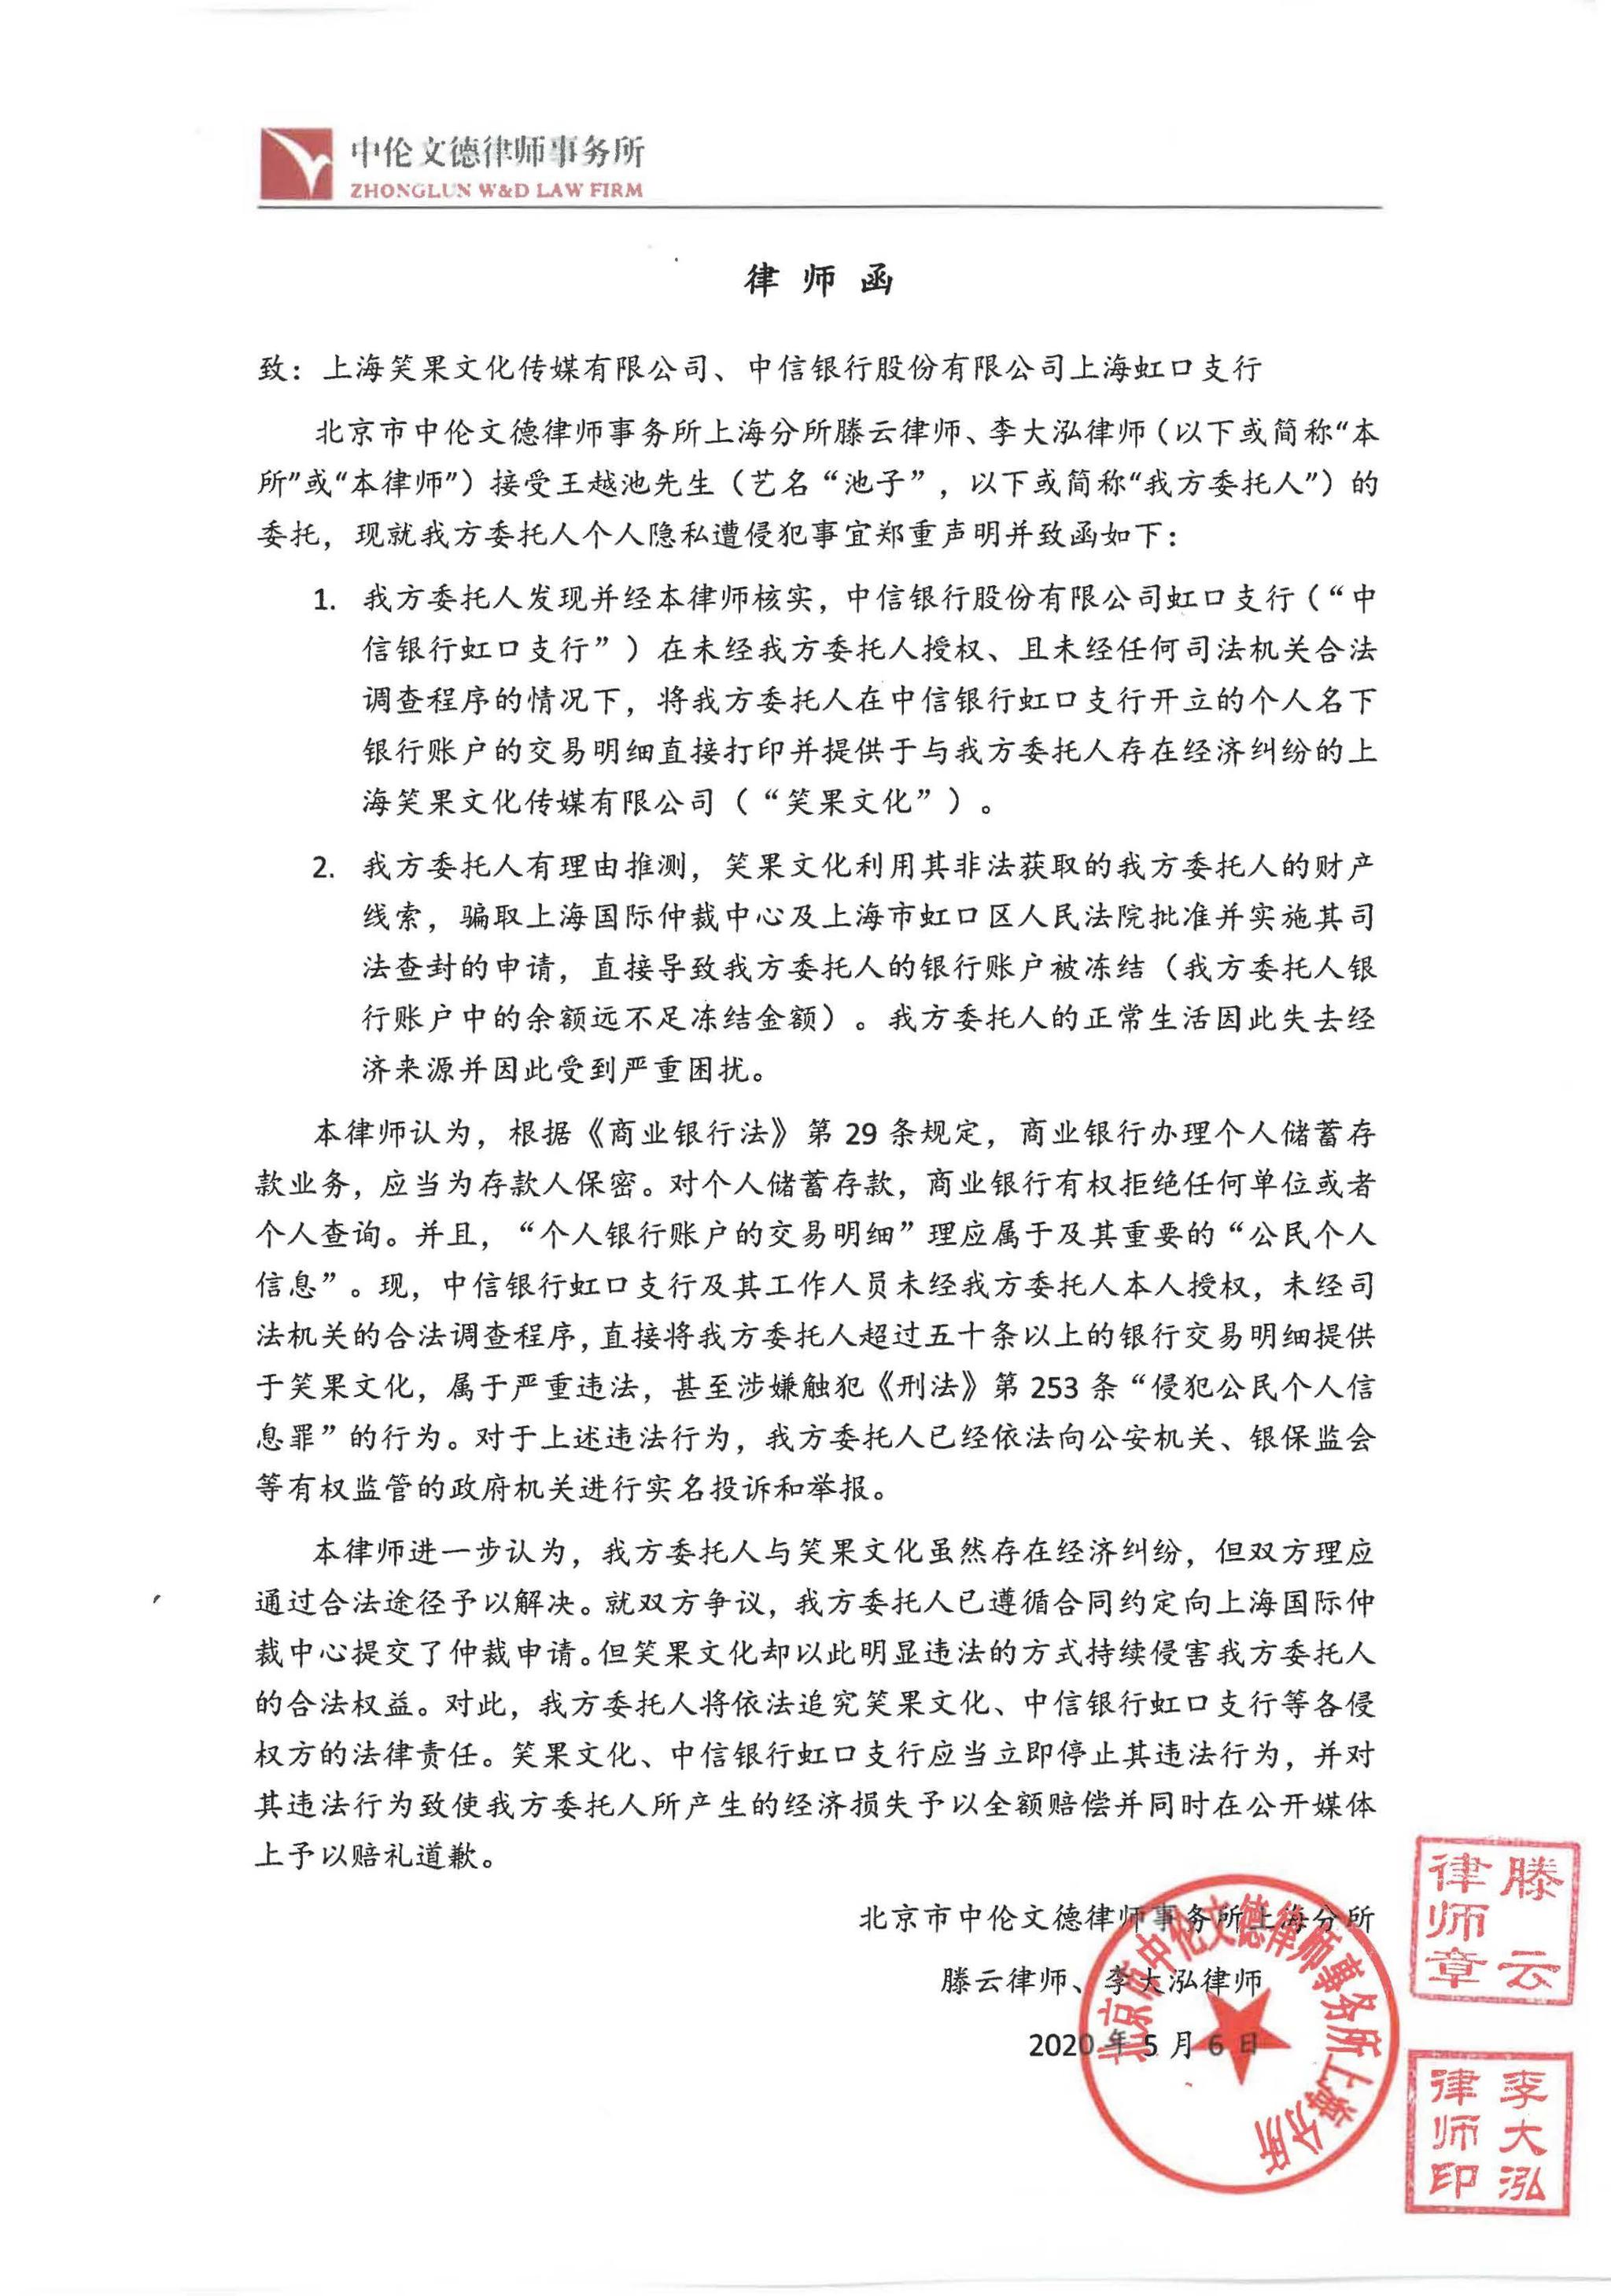 上海虹口法院回应池子账户被冻结:财产保全符合法律规定